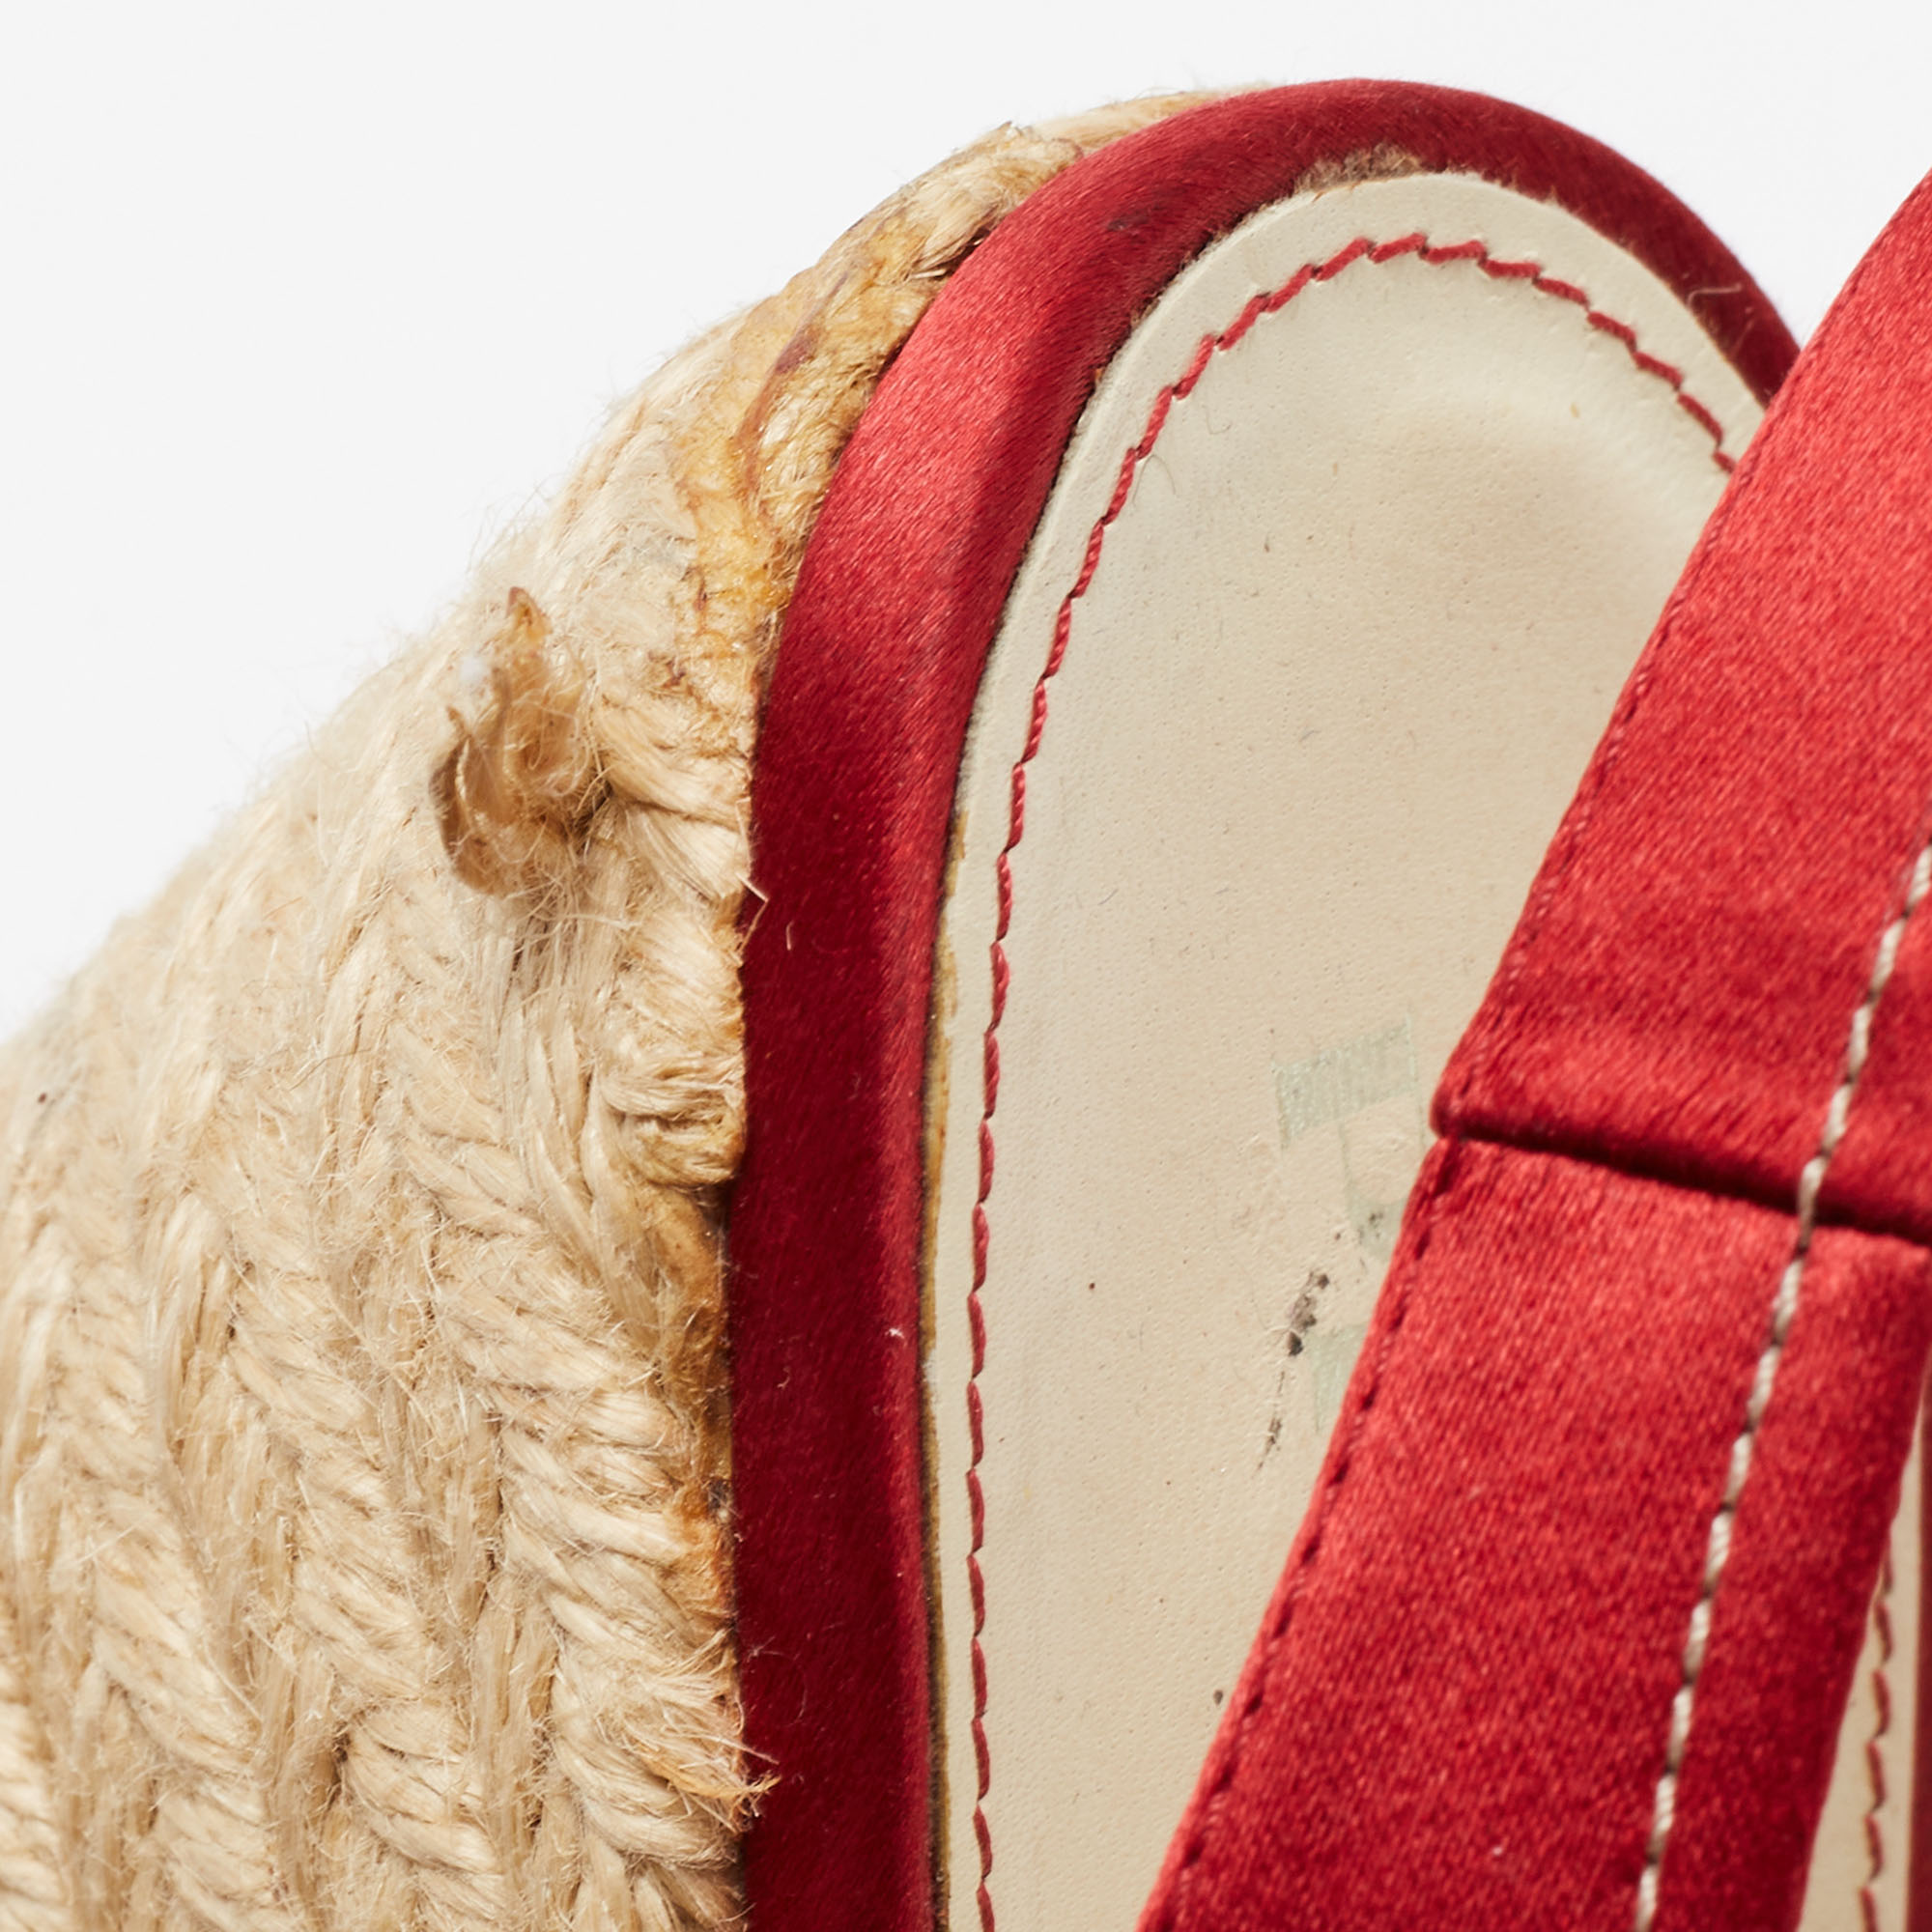 Prada Red Satin Espadrille Platform Wedge Slingback Sandals Size 39